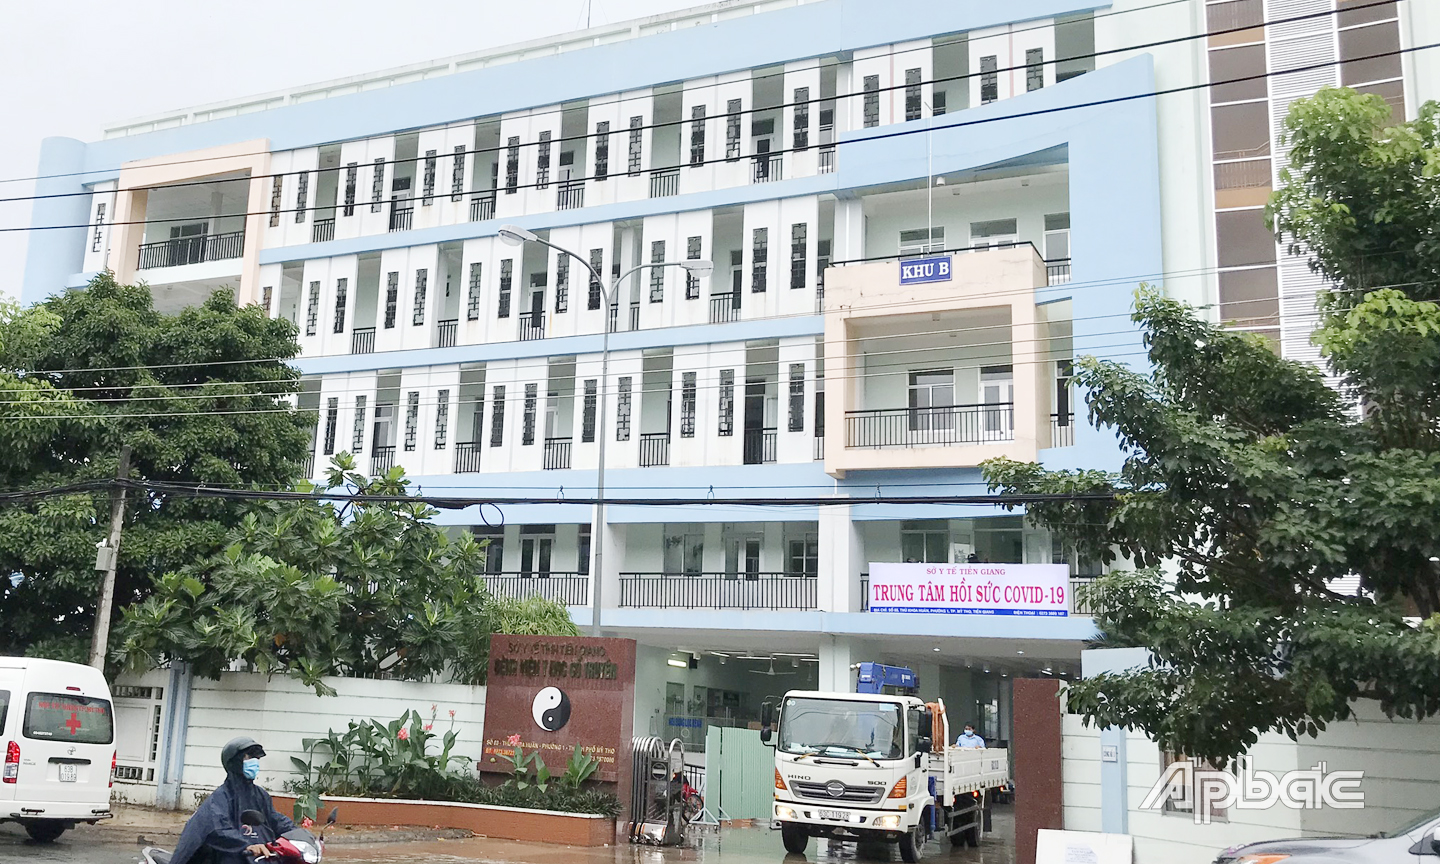 Trung tâm Hồi sức bệnh nhân Covid-19 của tỉnh Tiền Giang đang nỗ lực cứu chữa bệnh nhân Covid-19 nặng và rất nặng.